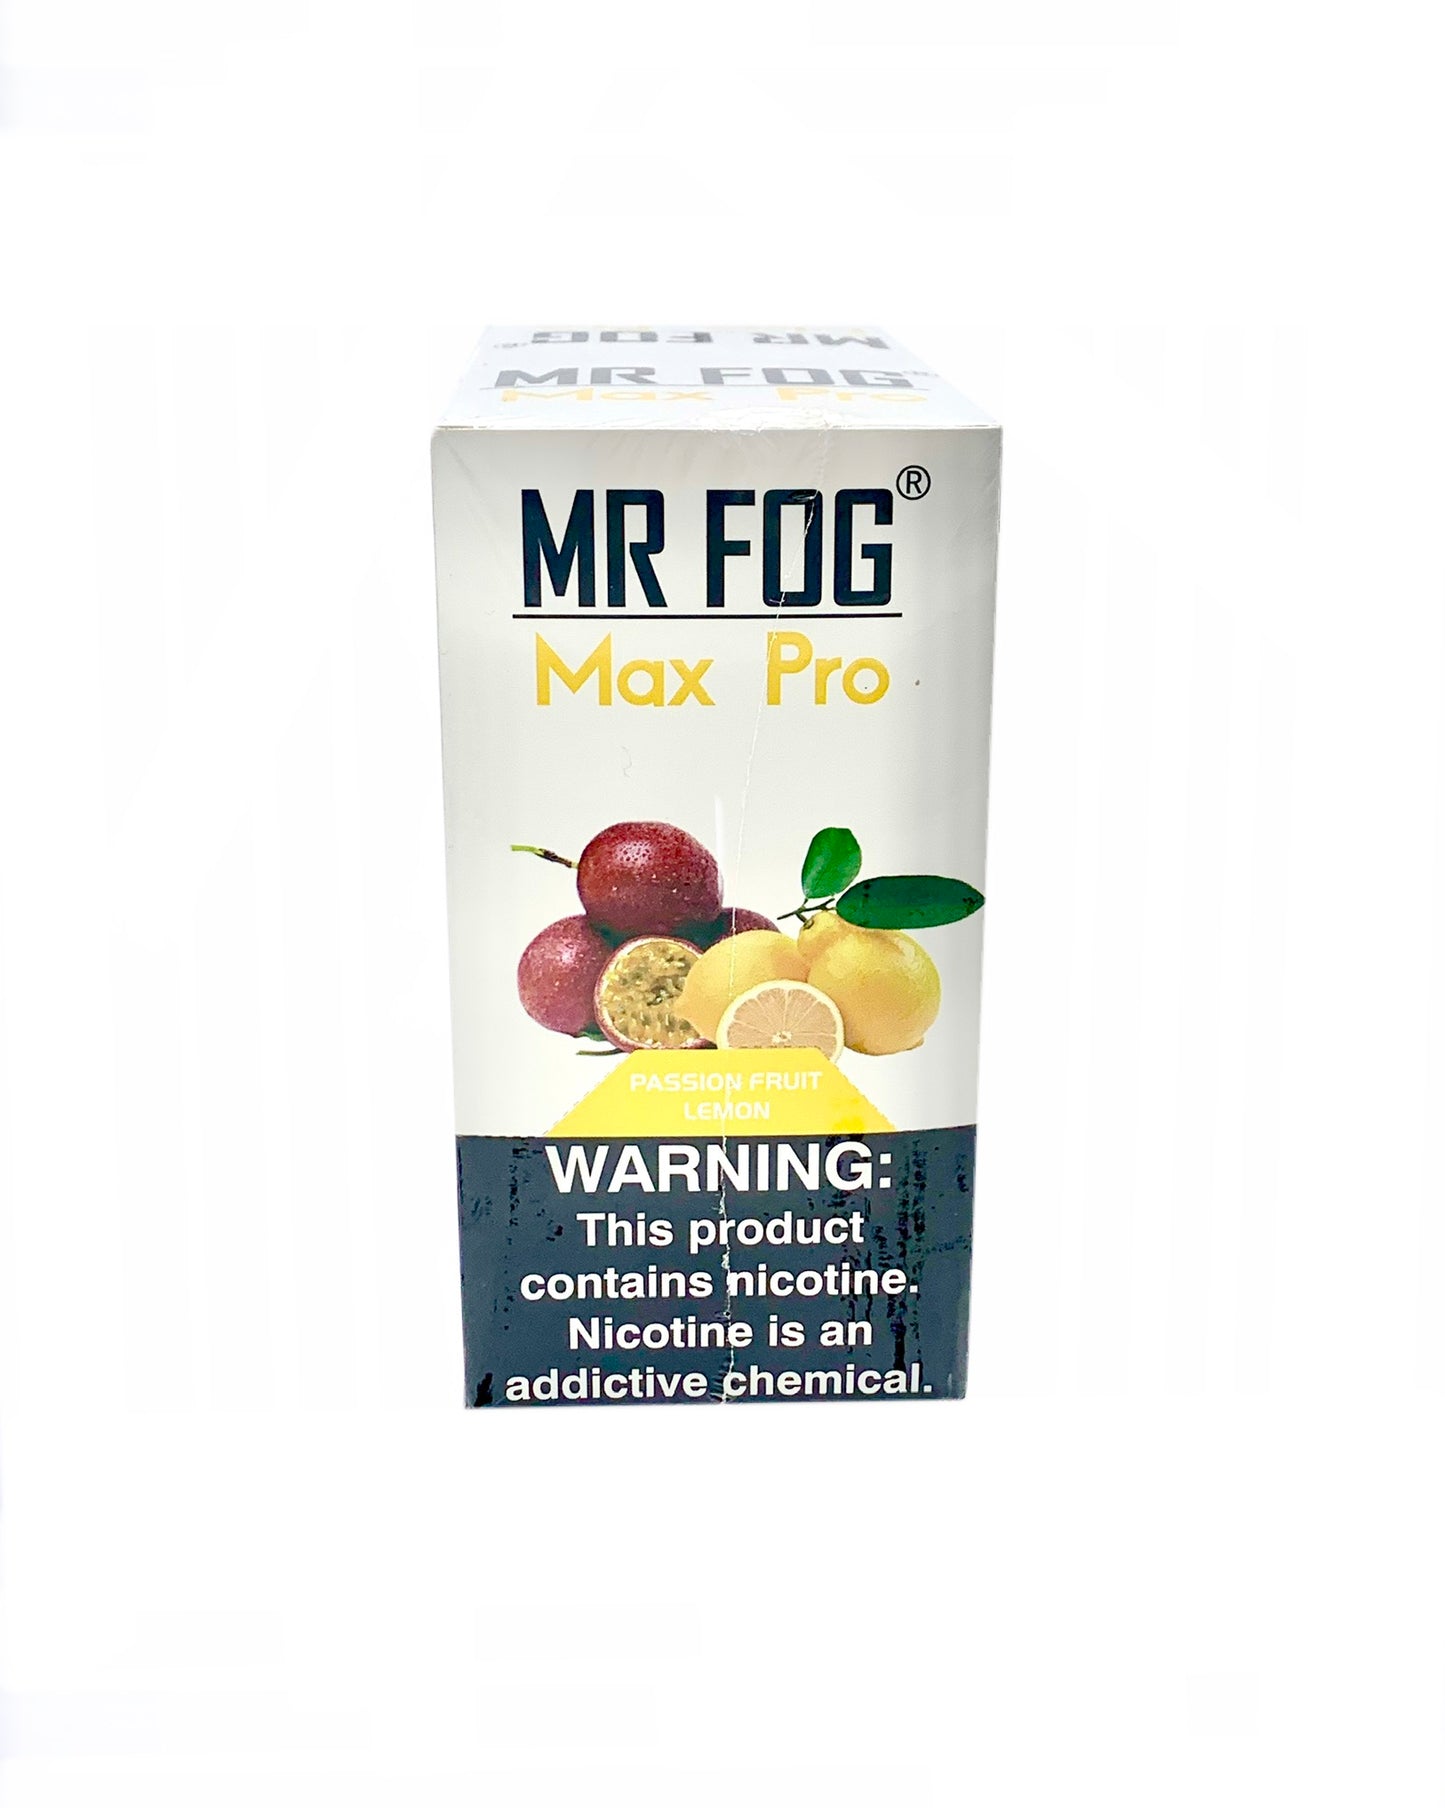 (10 unidades) Mr Fog Max Pro 1700 Puffs Maracuyá Limón $4.5 c/u